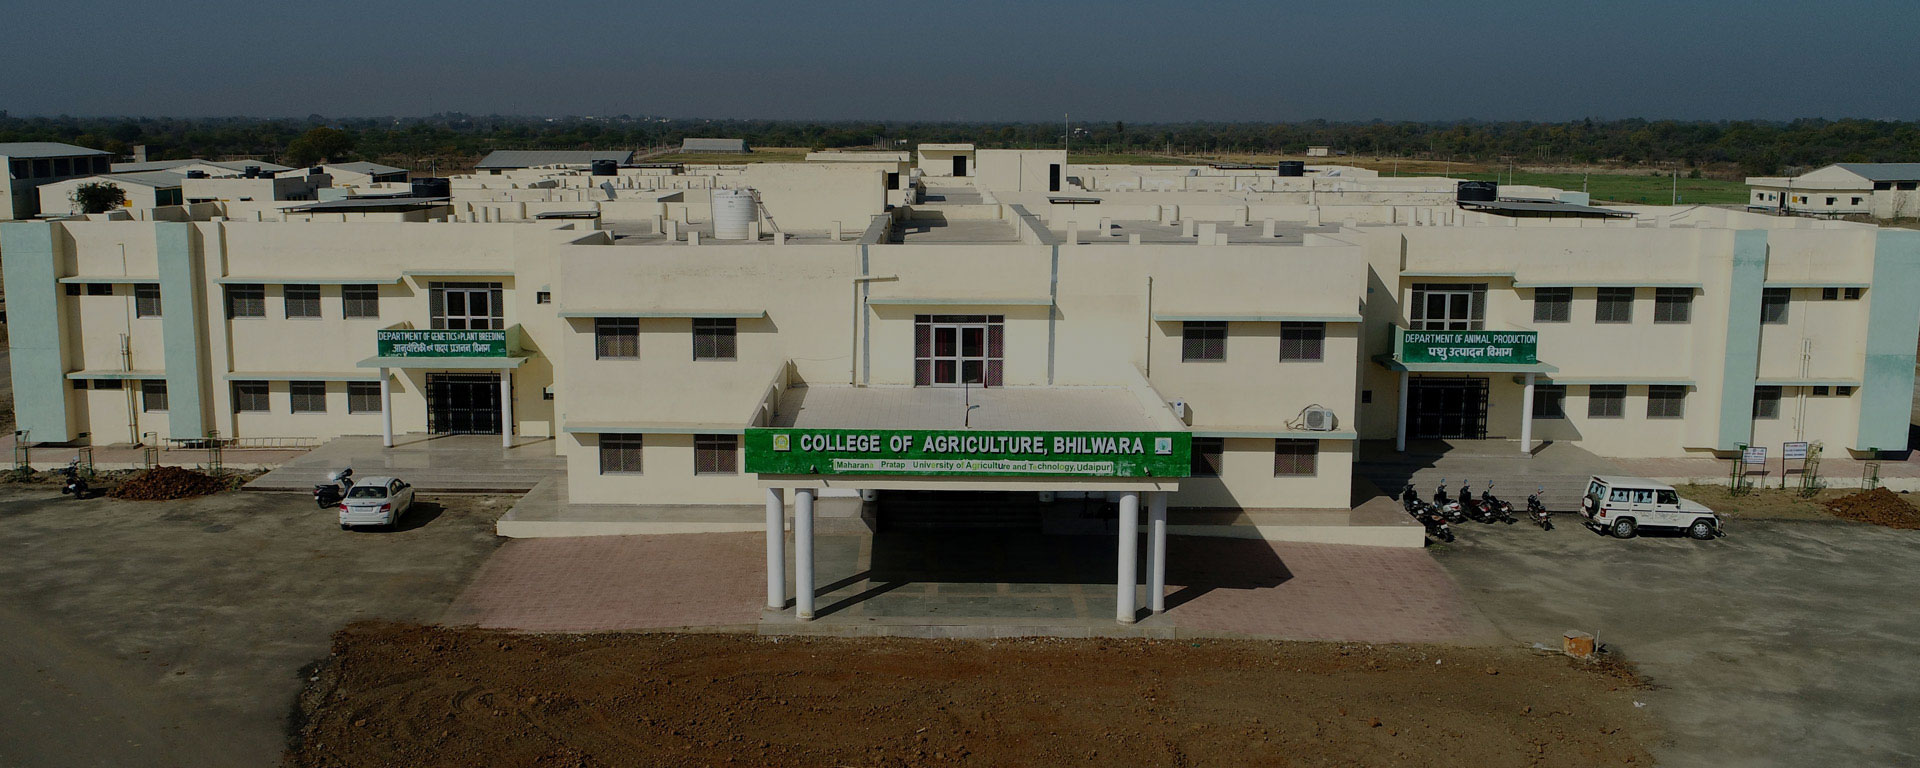 College of Agriculture, Bhilwara Image